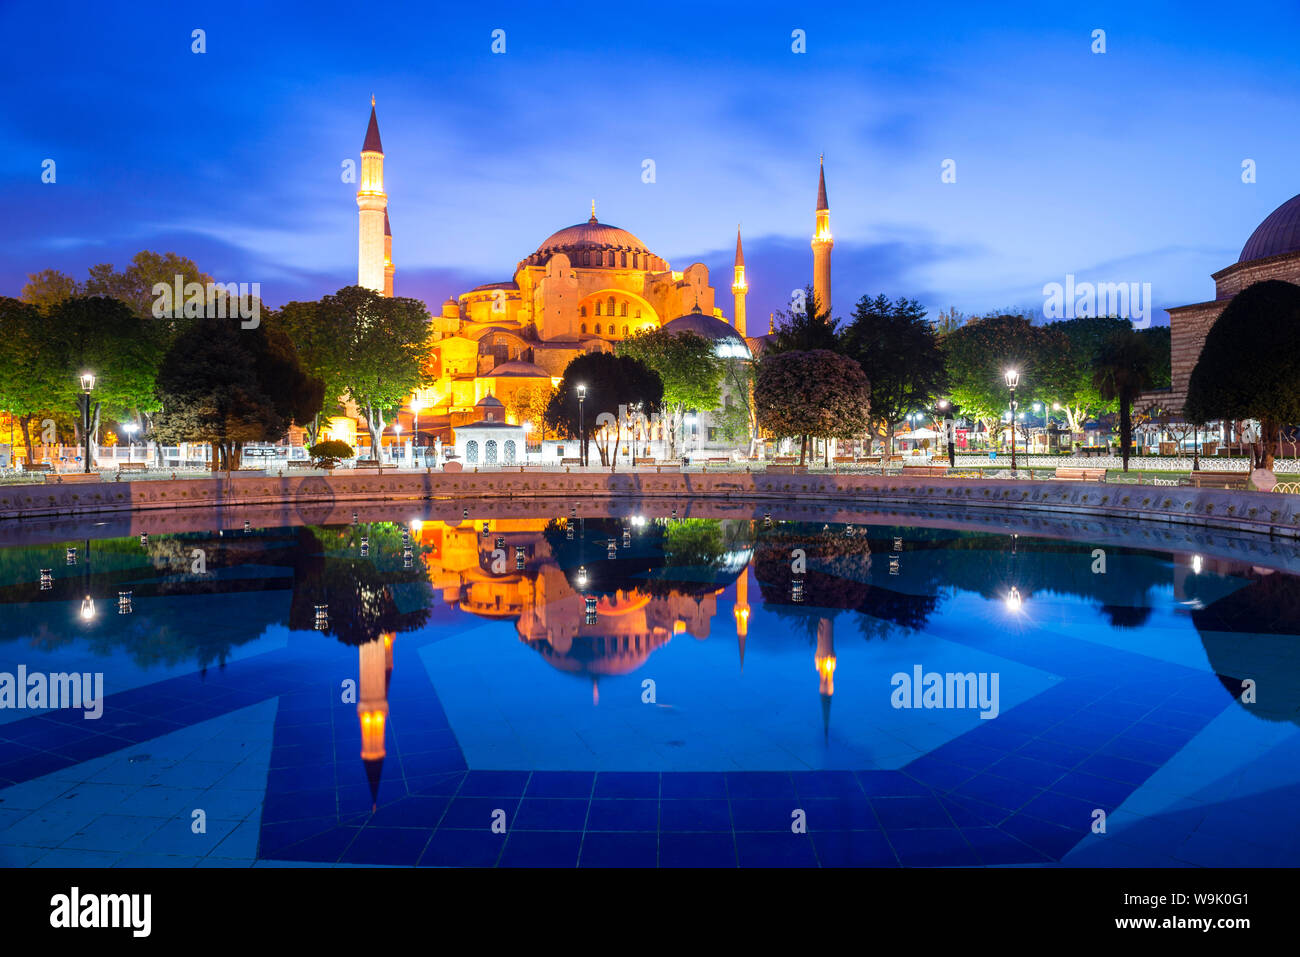 Sainte-sophie (Aya Sofya) (Santa Sofia), UNESCO World Heritage Site, reflet dans la nuit, la Place Sultanahmet, Istanbul, Turquie, Europe Banque D'Images